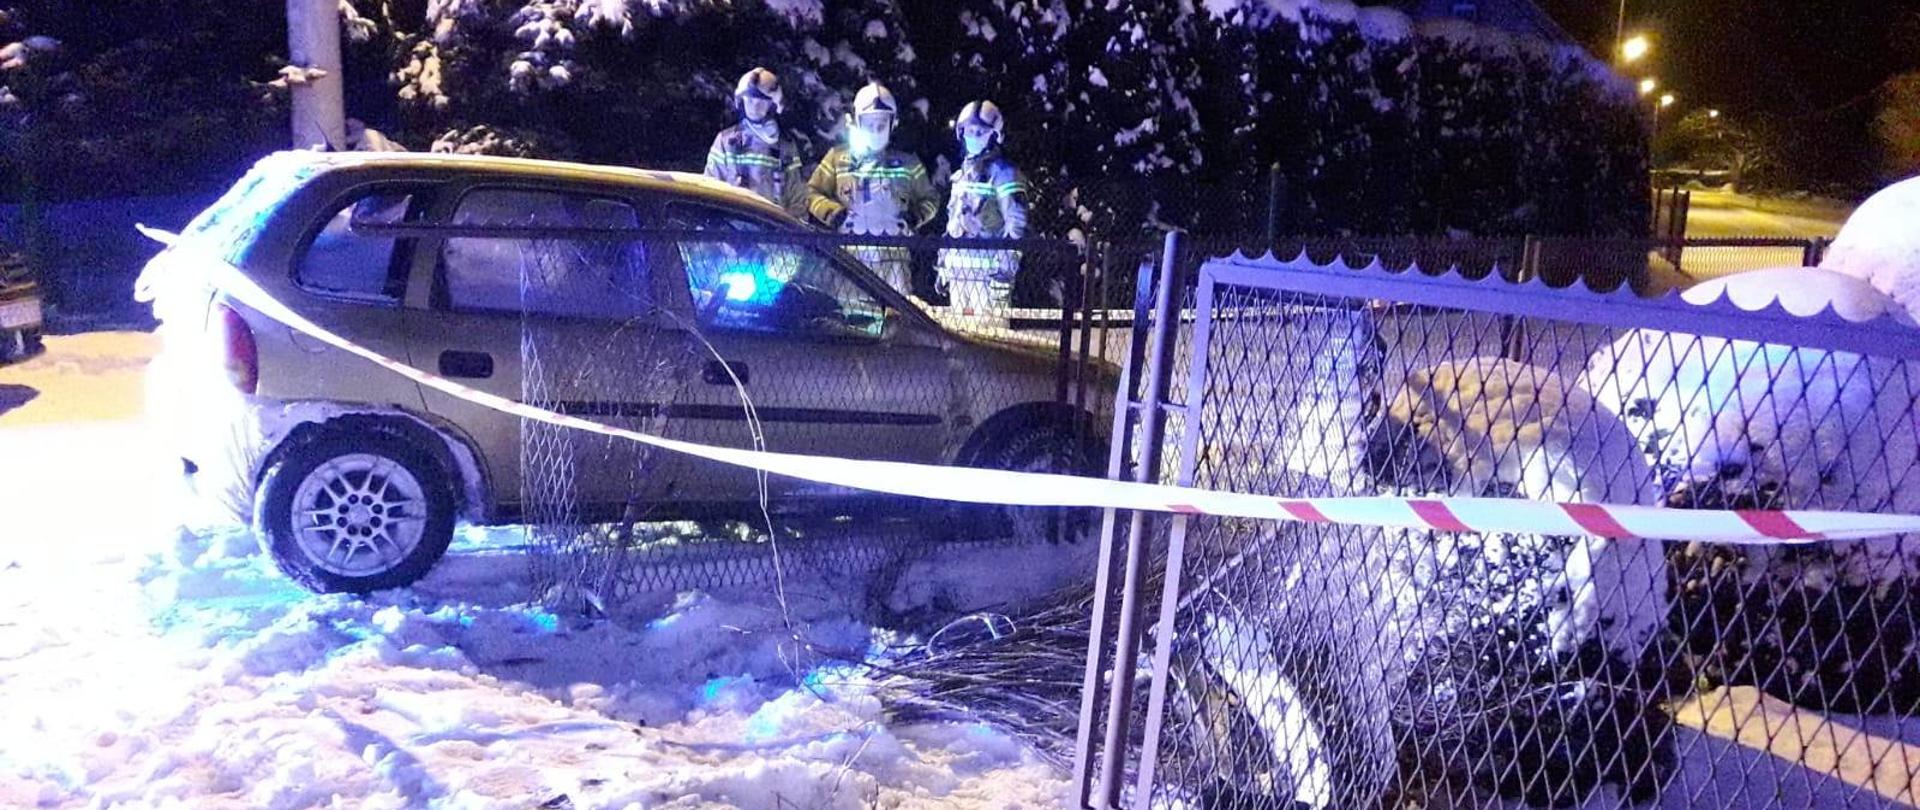 Inne ujęcie samochodu stojącego obok zniszczonego ogrodzenia. W tle stoi trzech strażaków. Wokół leży śnieg.